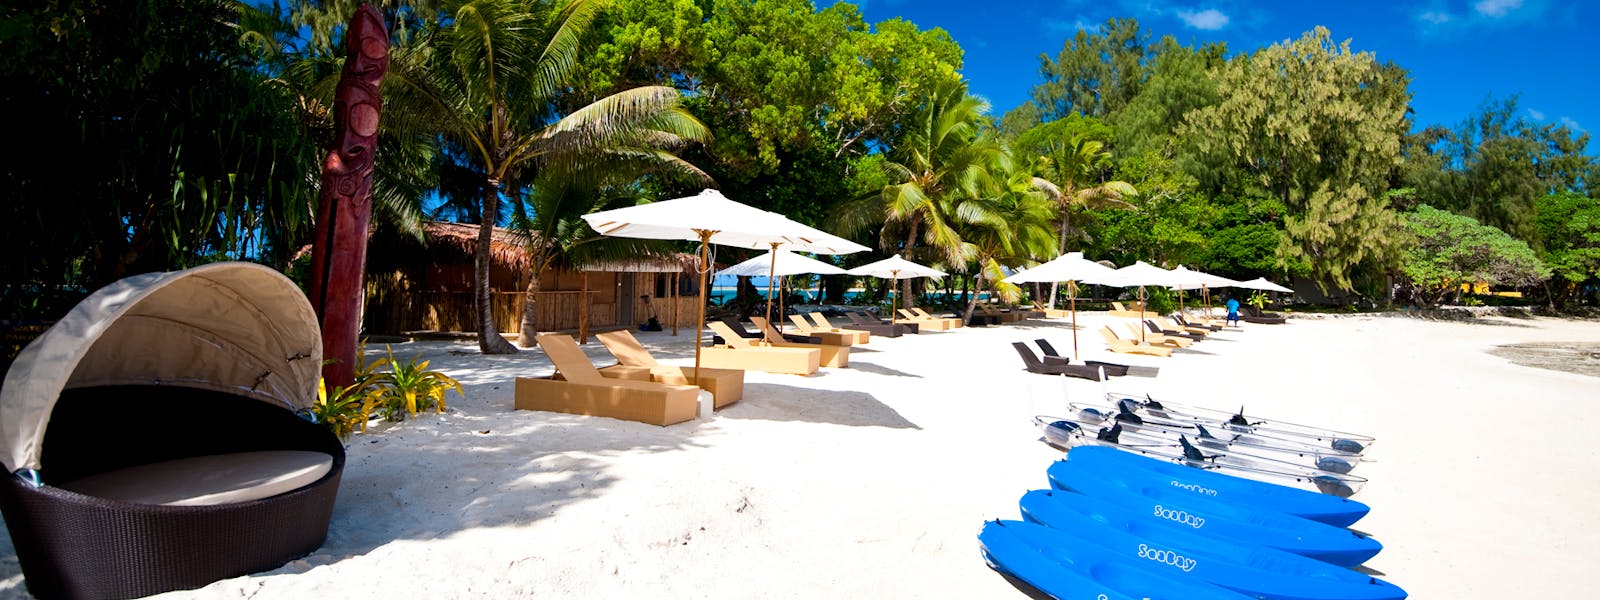 Calypso Beach erakor island resort Vanuatu tourism